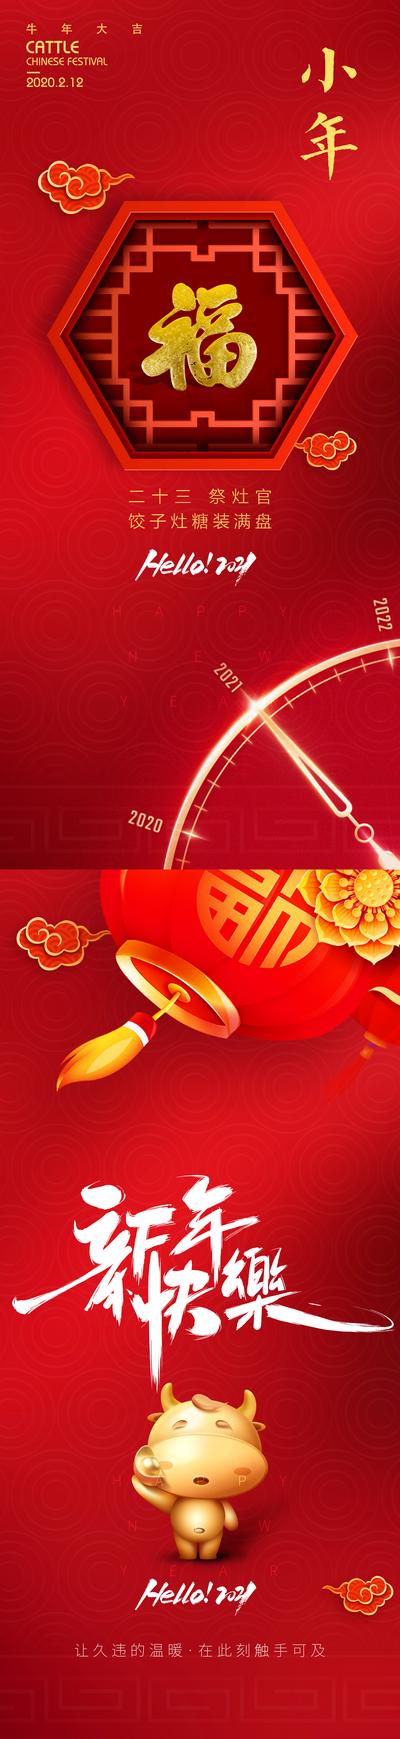 南门网 海报 中国传统节日 新年快乐  小年  福  灯笼  系列